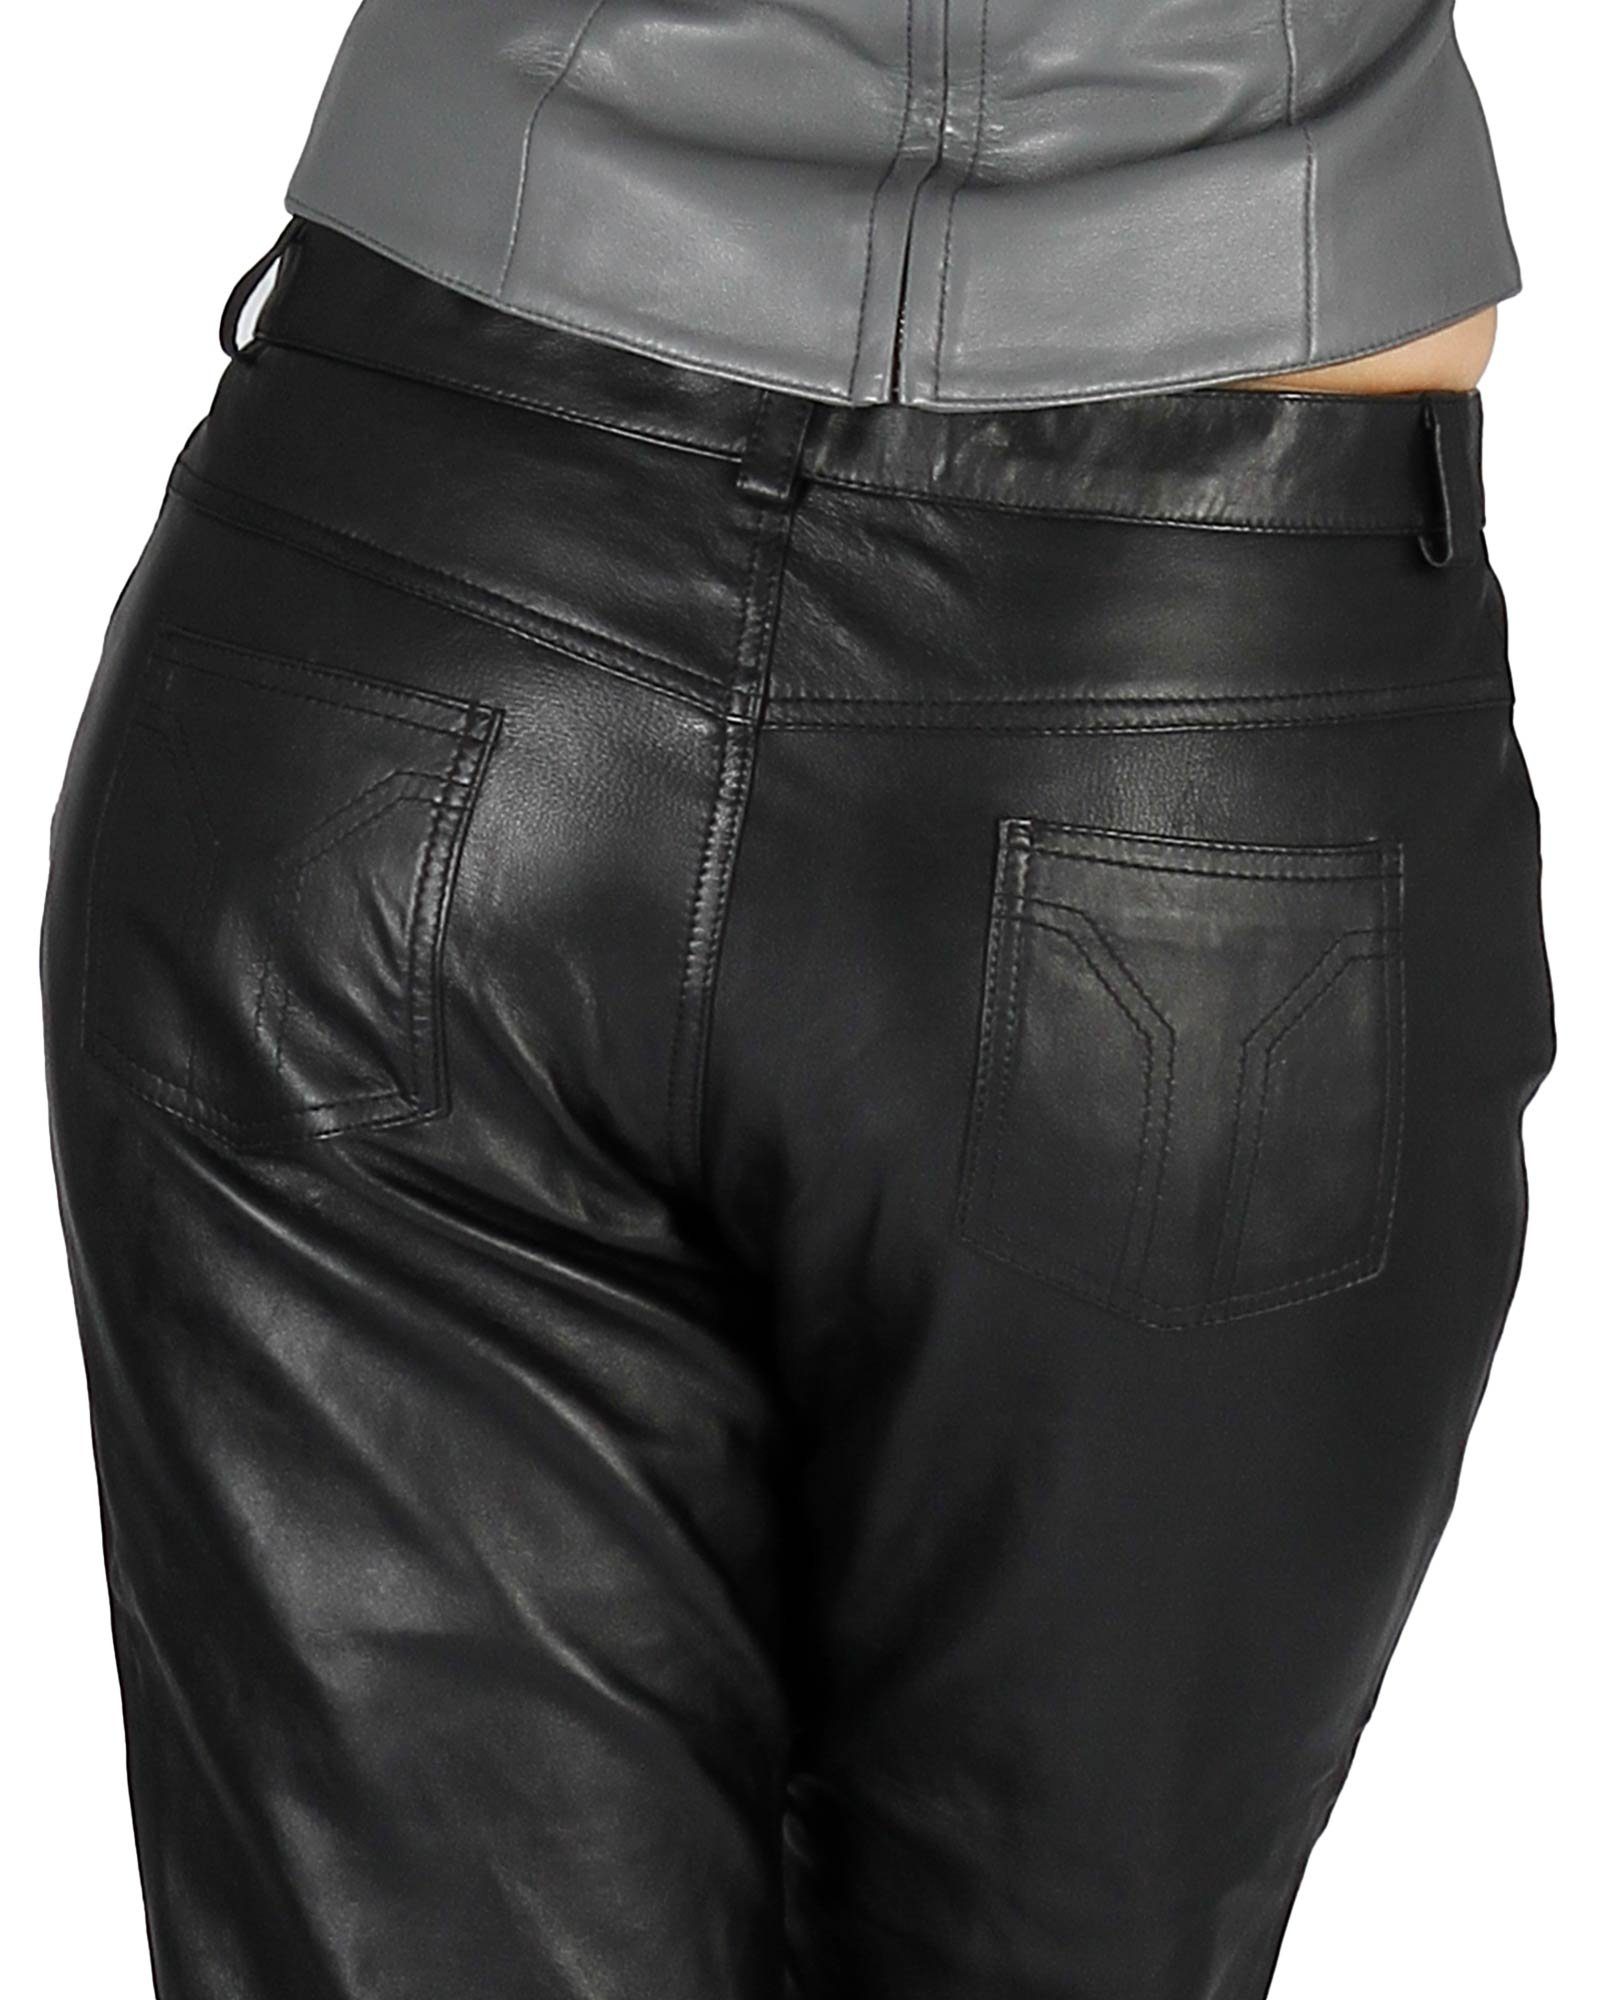 Leder 5-Pocket Damenlederhose Lederhose Fetish-Design Echtes Schwarz Lederhose